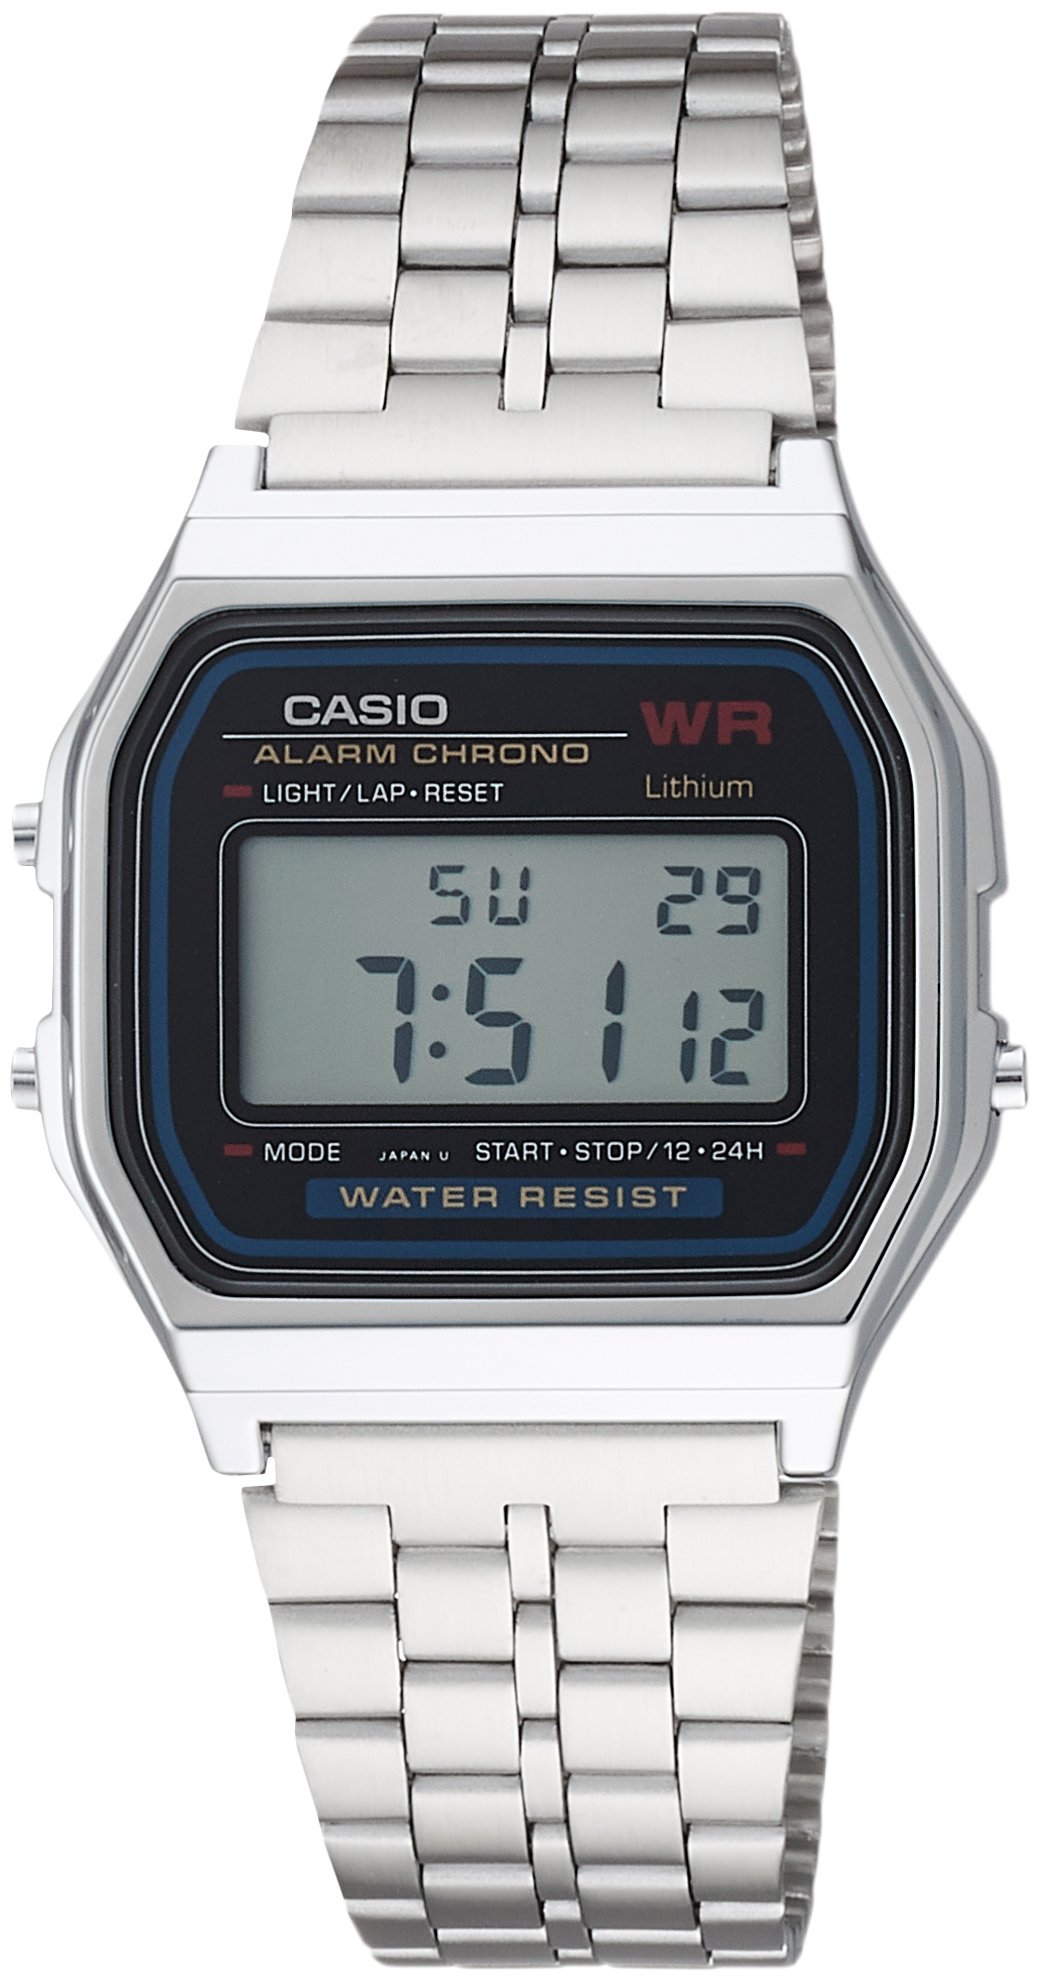 Casio Classic Digital Mens Watch A159W-N1DF